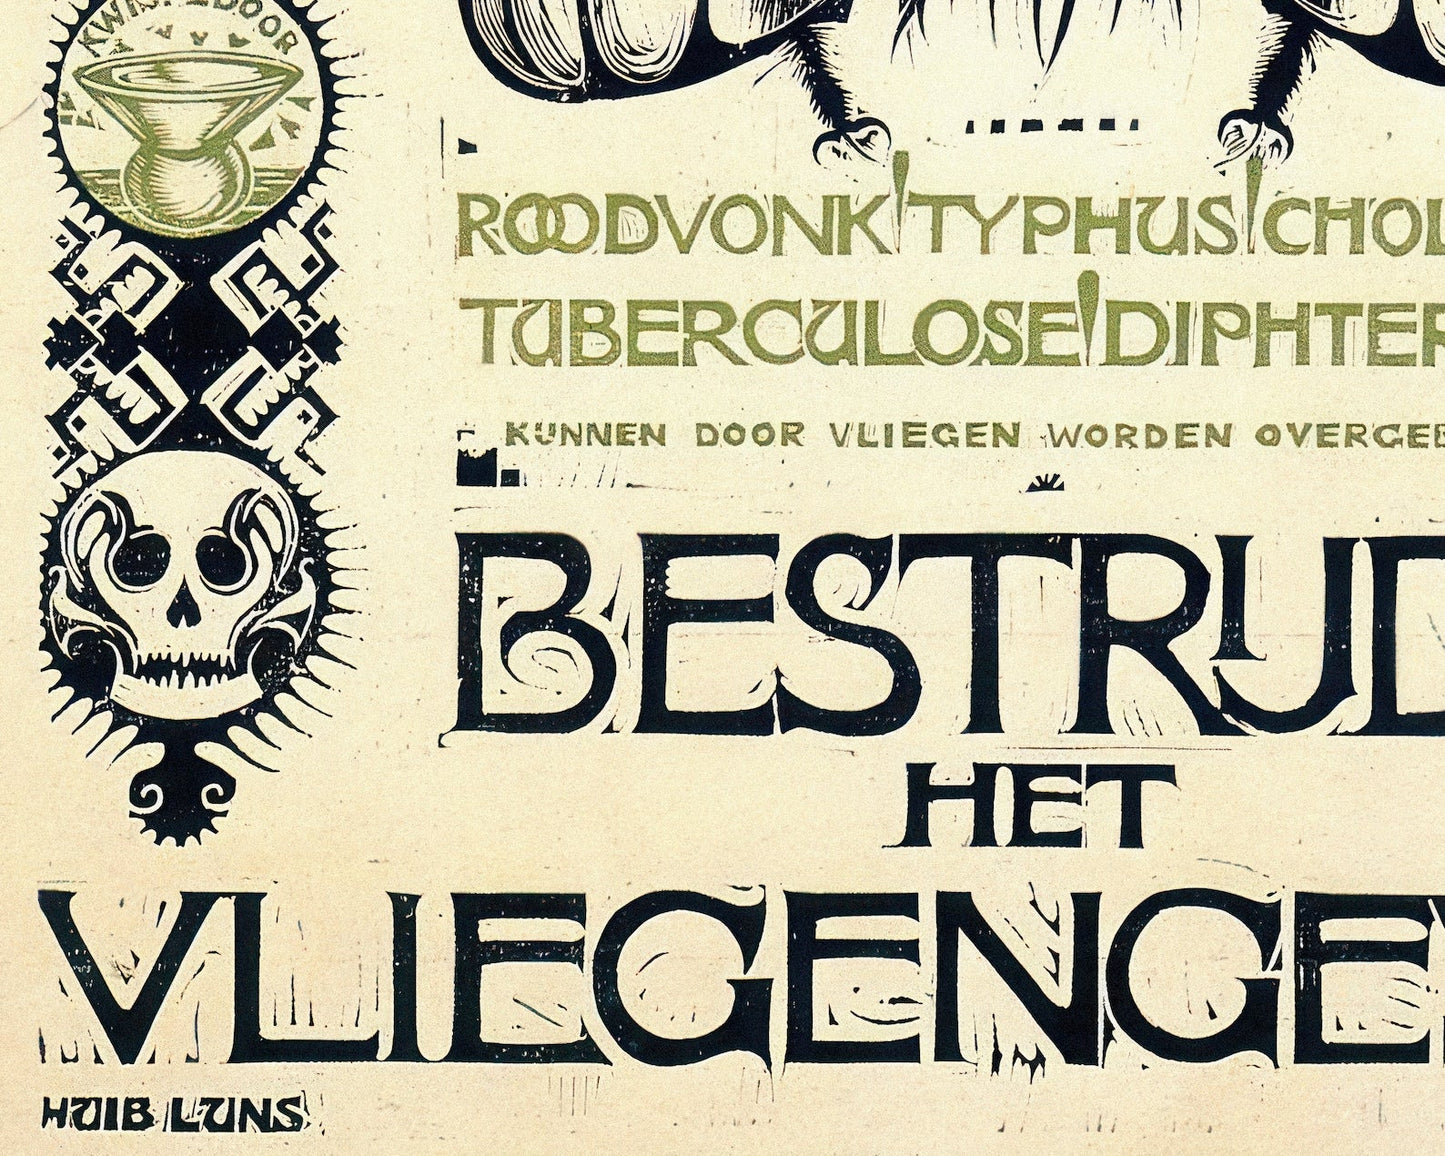 Huib Luns "Bestrijd het Vliegengevaar" (c.1915) Dutch Public Service Advertisement - Mabon Gallery